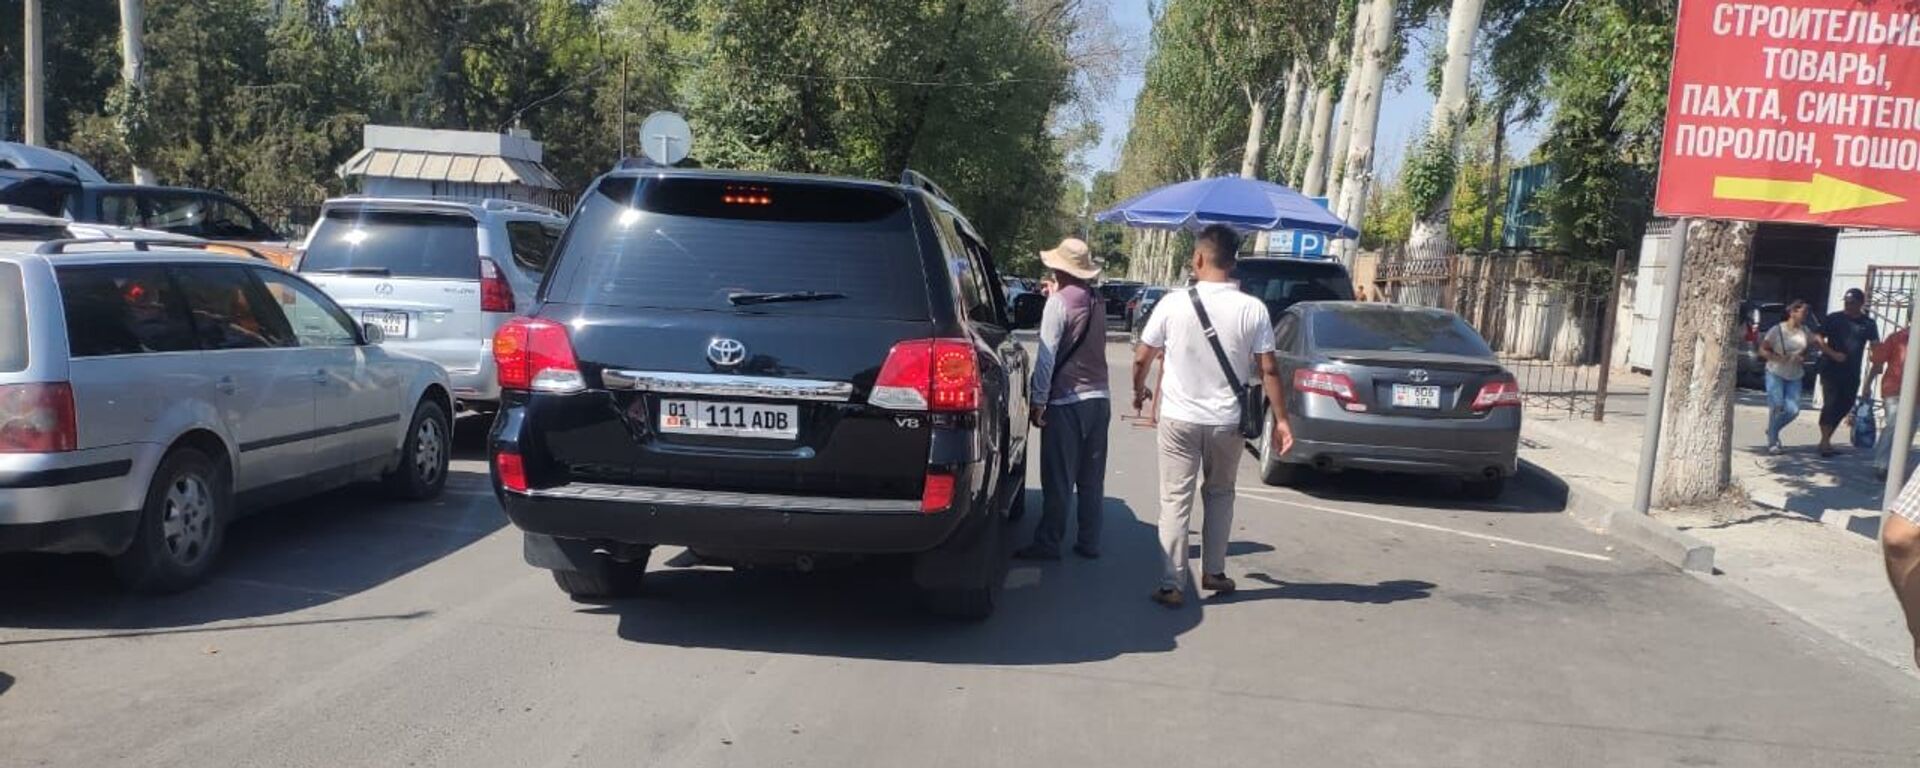 В Бишкеке возле рынка Мадина задержали нелегальных парковщиков - Sputnik Кыргызстан, 1920, 12.08.2021